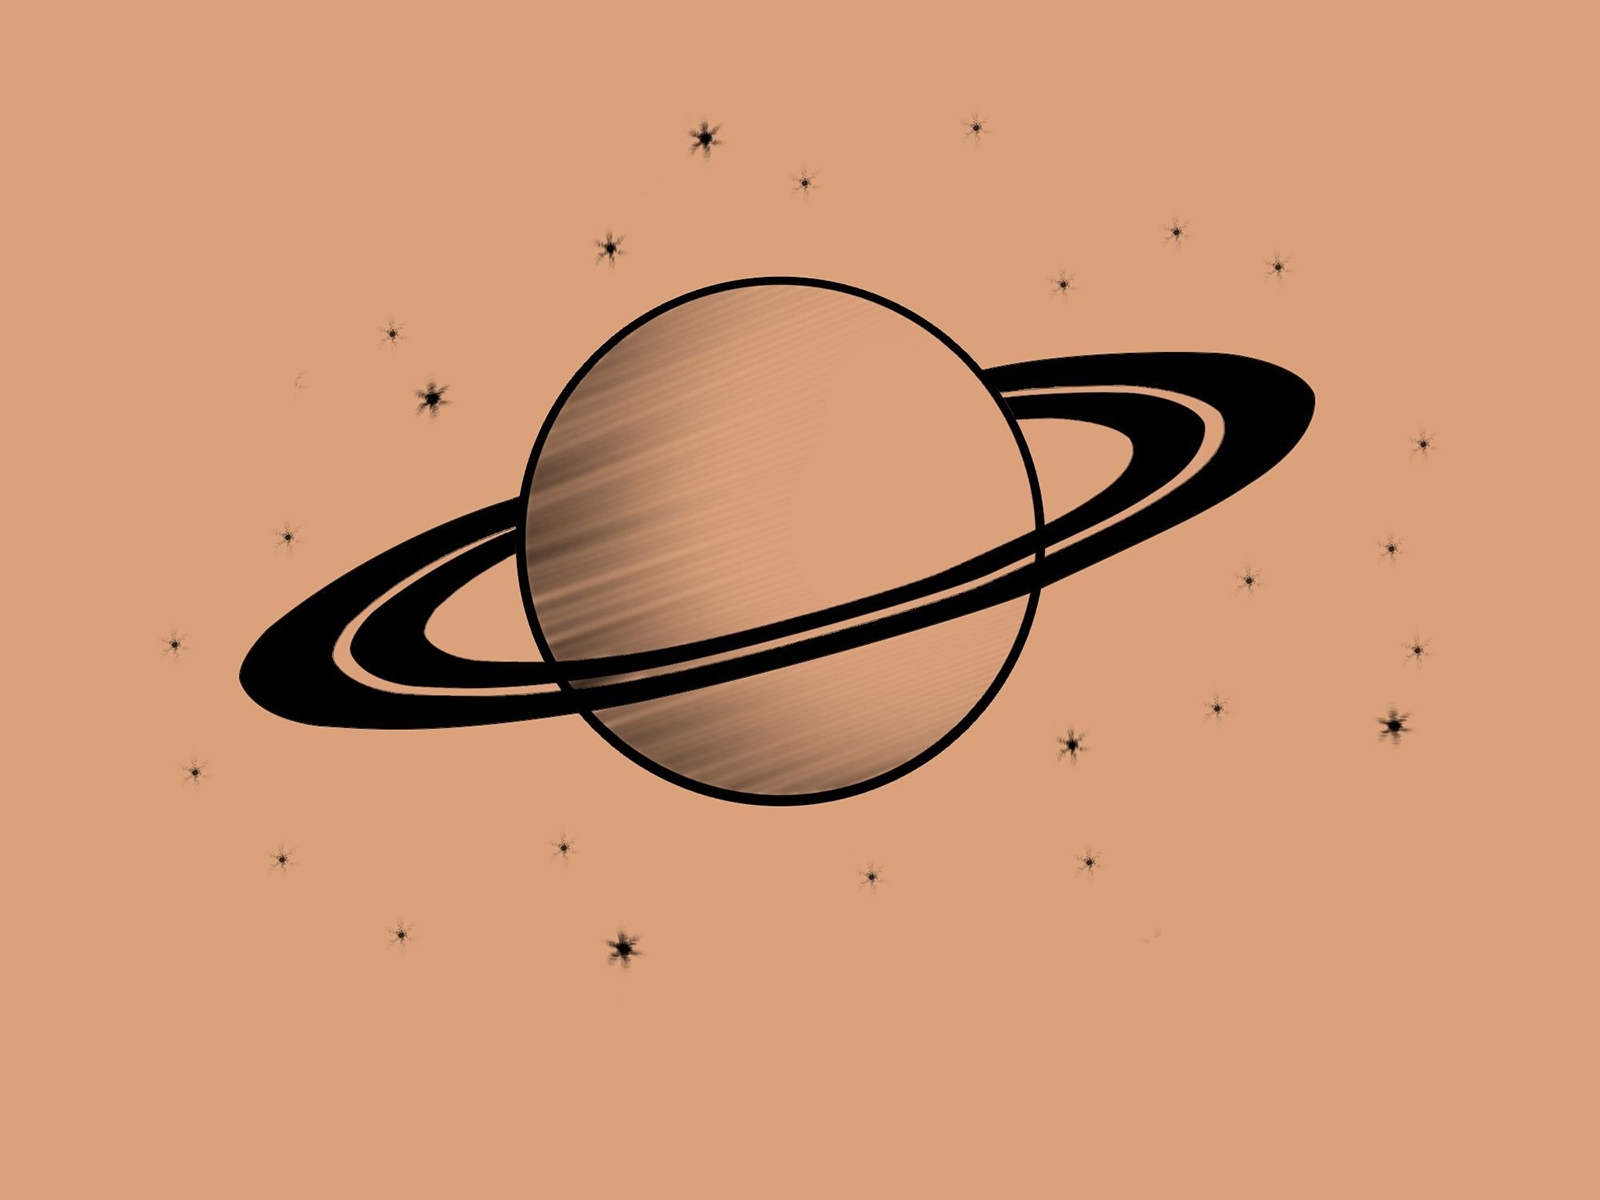 Сатурн картинки для детей